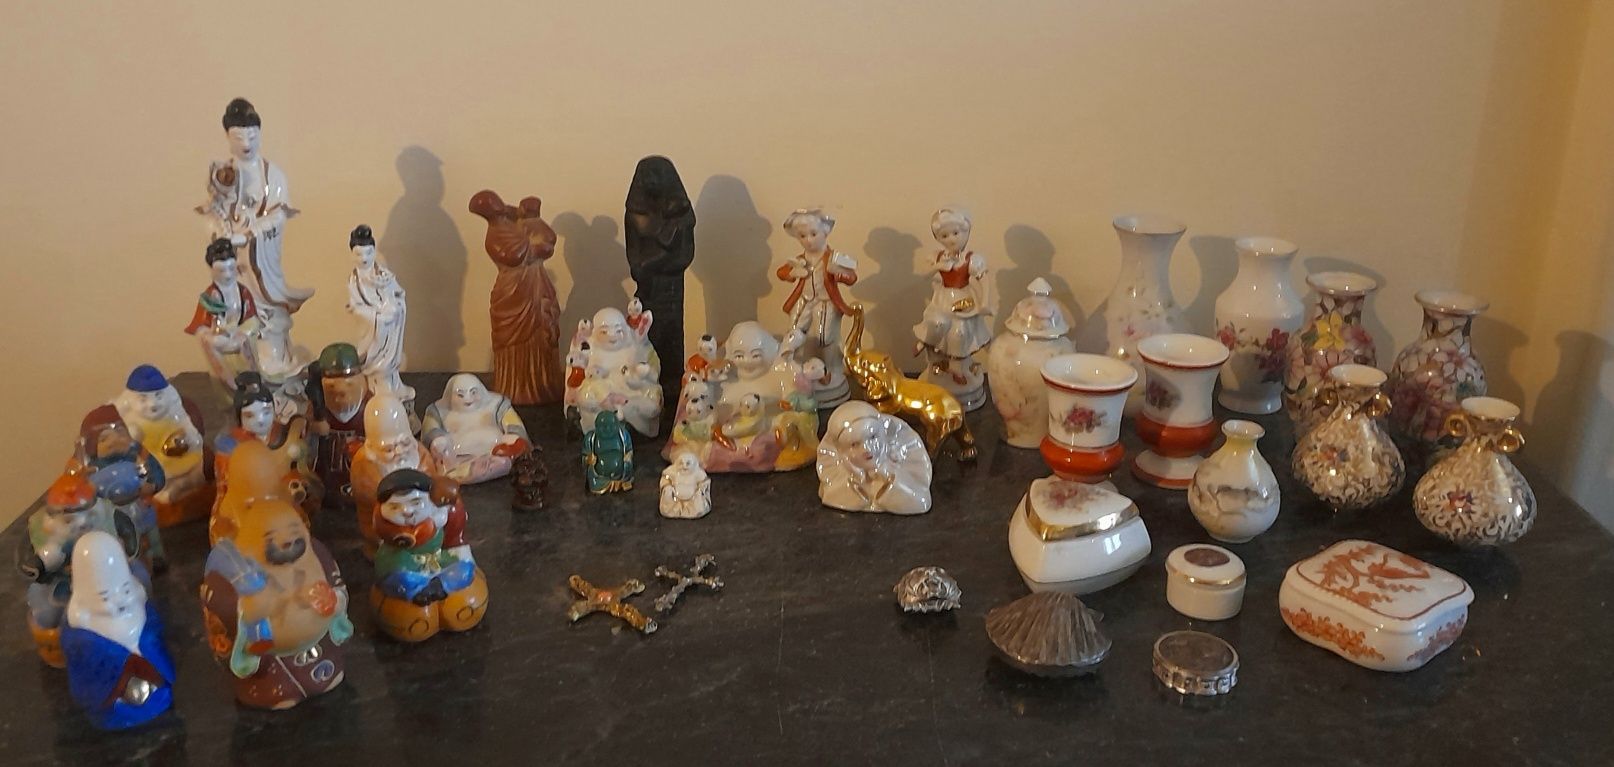 43 peças decorativas em porcelana,  cerâmica e metal. De 10 a 80€